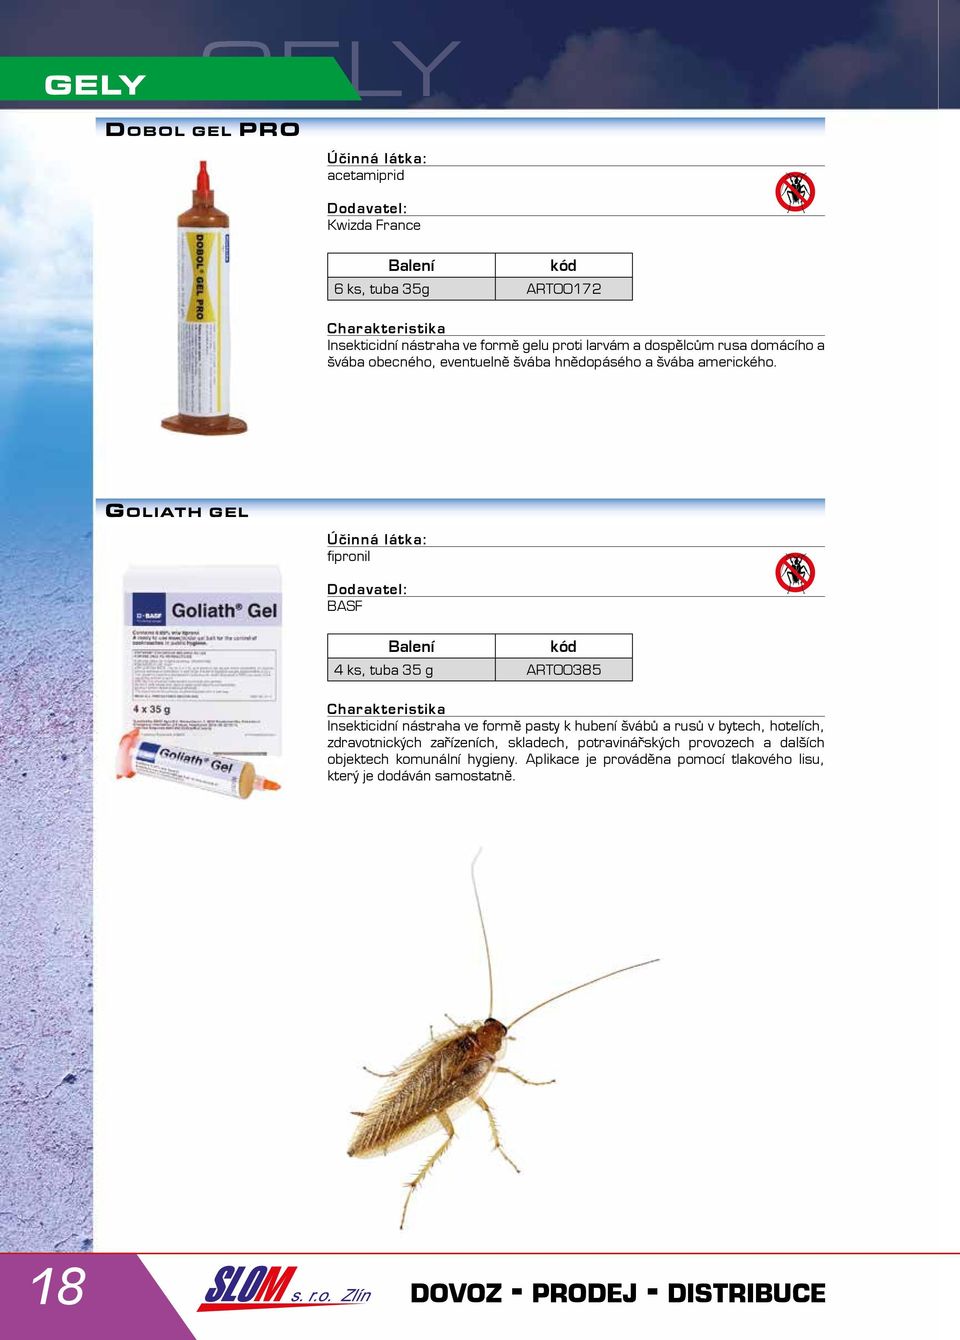 GOLIATH GEL fipronil BASF 4 ks, tuba 35 g ART00385 Insekticidní nástraha ve formě pasty k hubení švábů a rusů v bytech, hotelích,